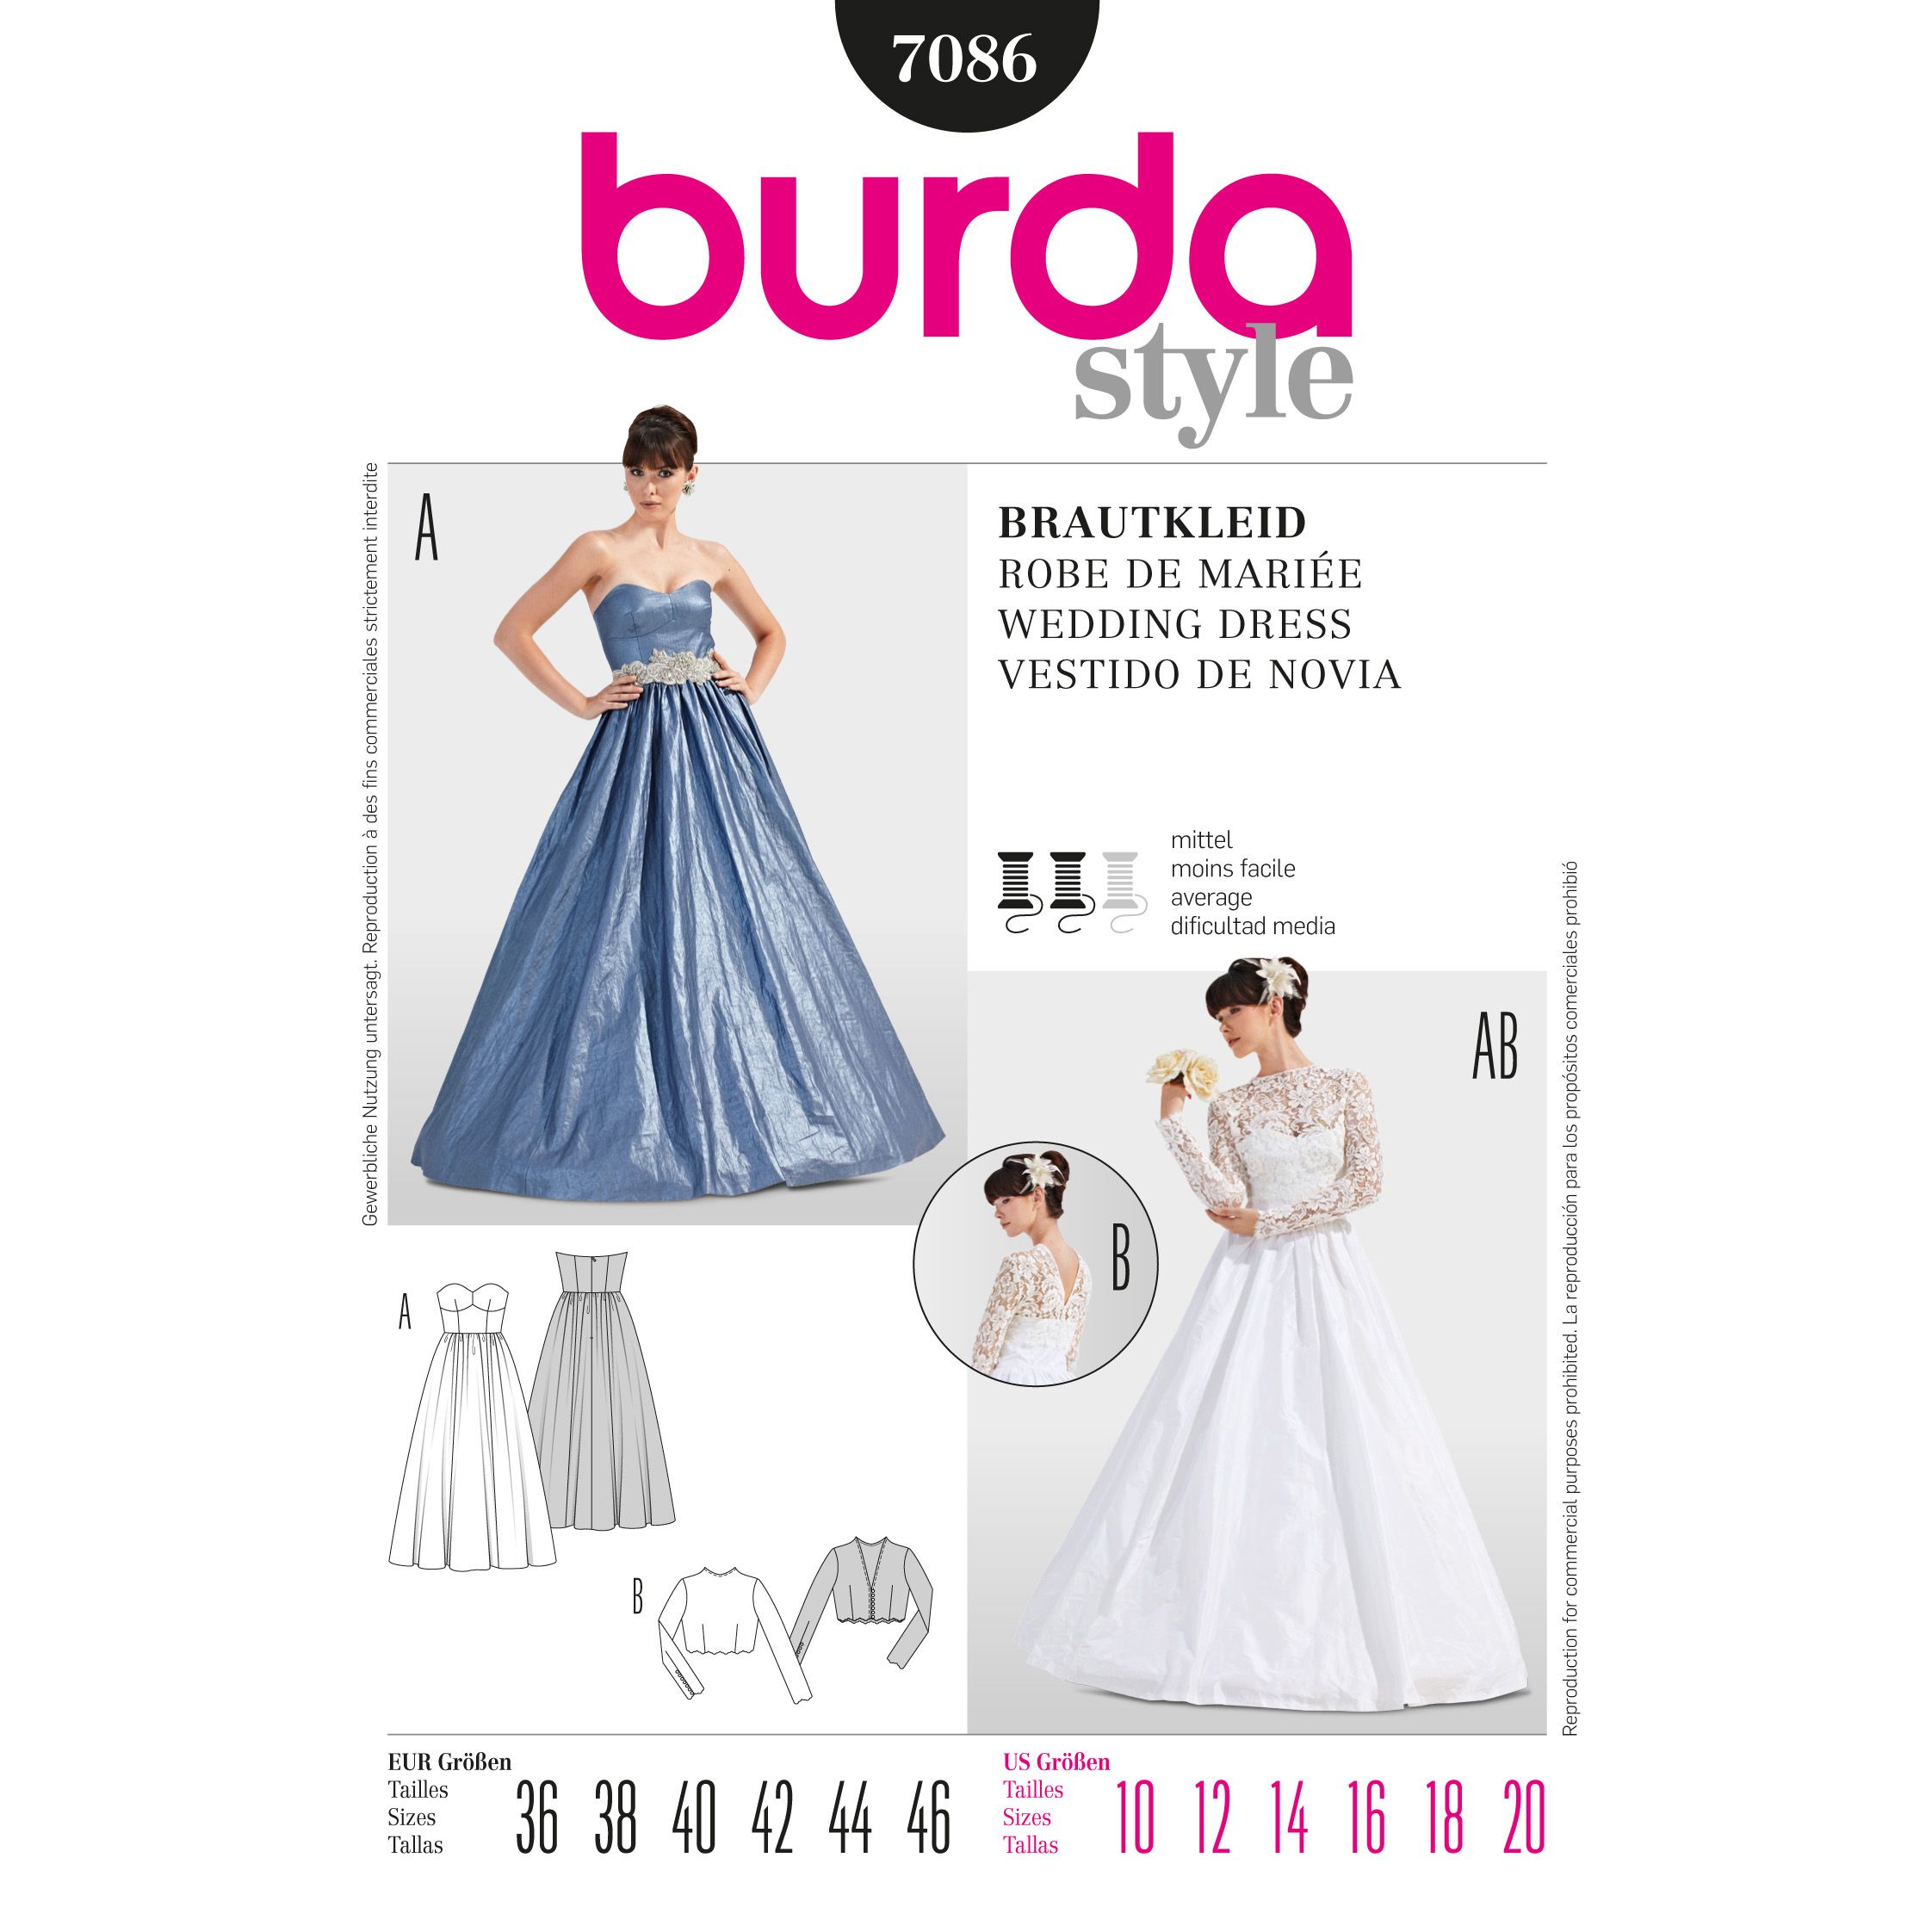 burda wedding dress 2019